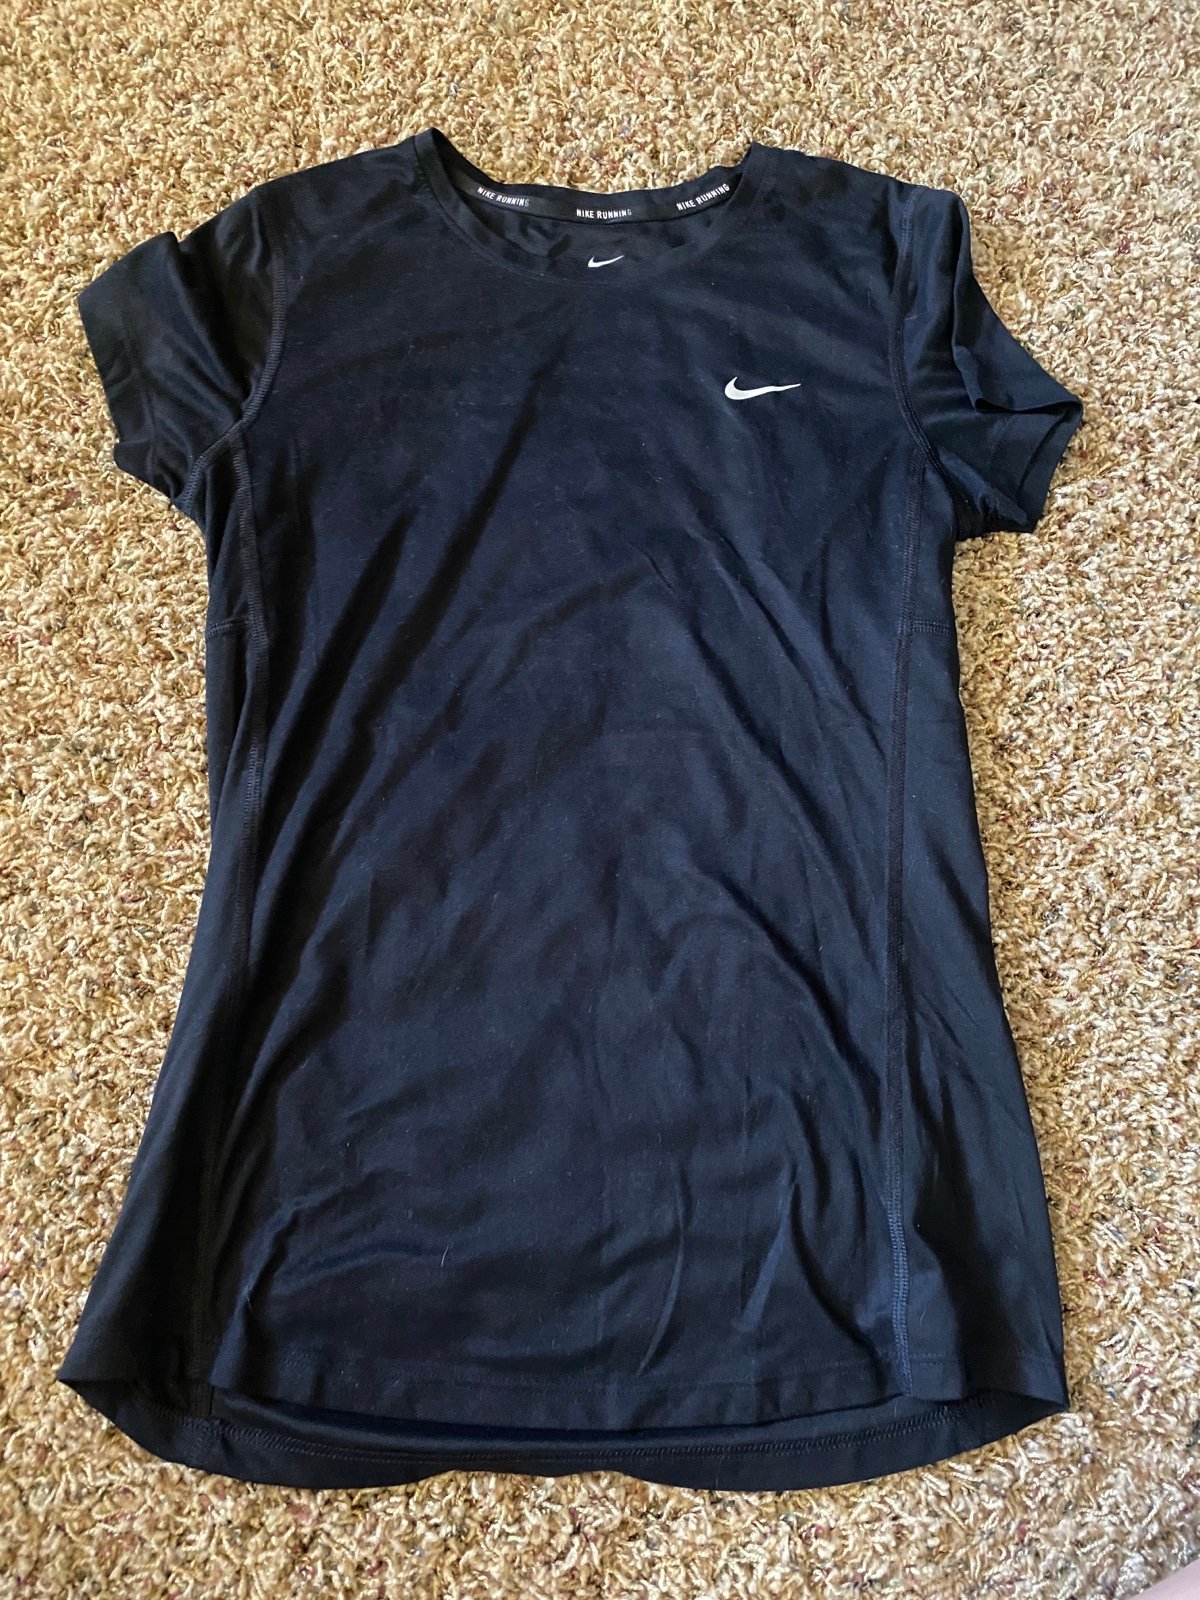 Nice Nike Running shirt NsNXNwzBt no tax